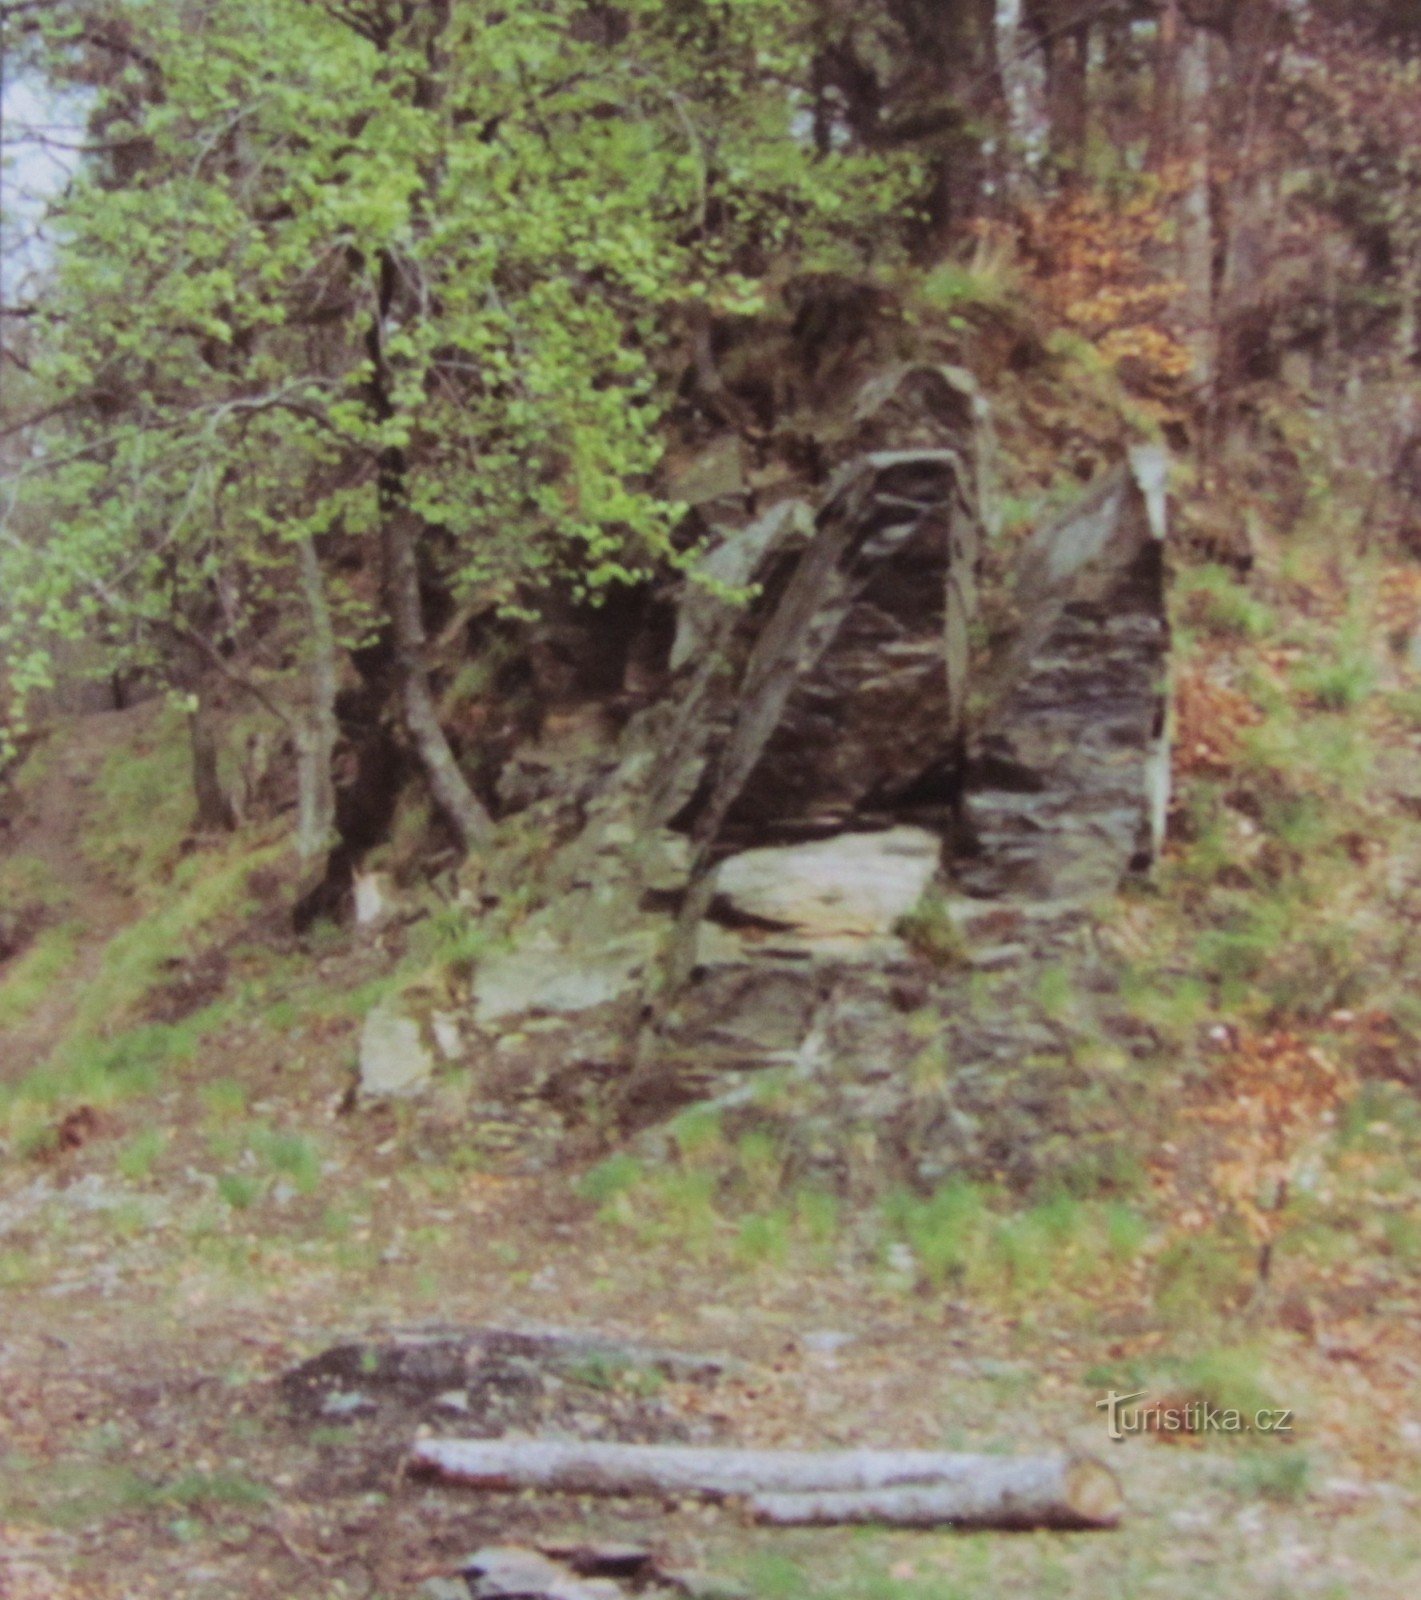 Desde Hranice a través de Potštátská skály hasta las ruinas del castillo de Drahotuš (retro 1997)